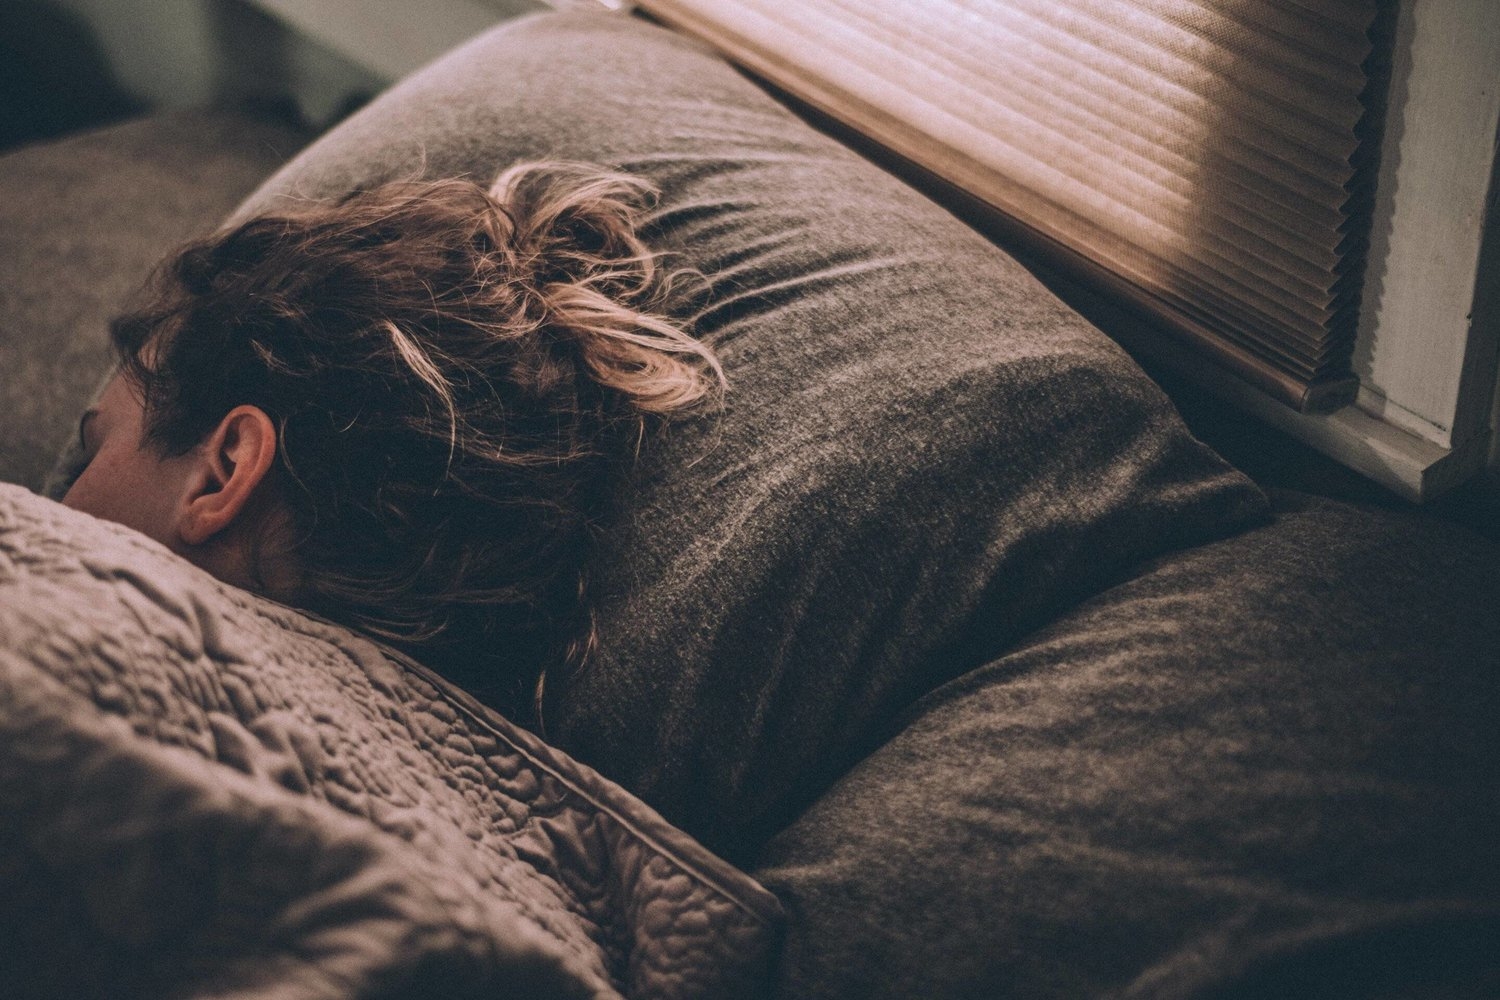 دواء لعلاج الأرق يقلل الحركات اللاإرادية أثناء النوم